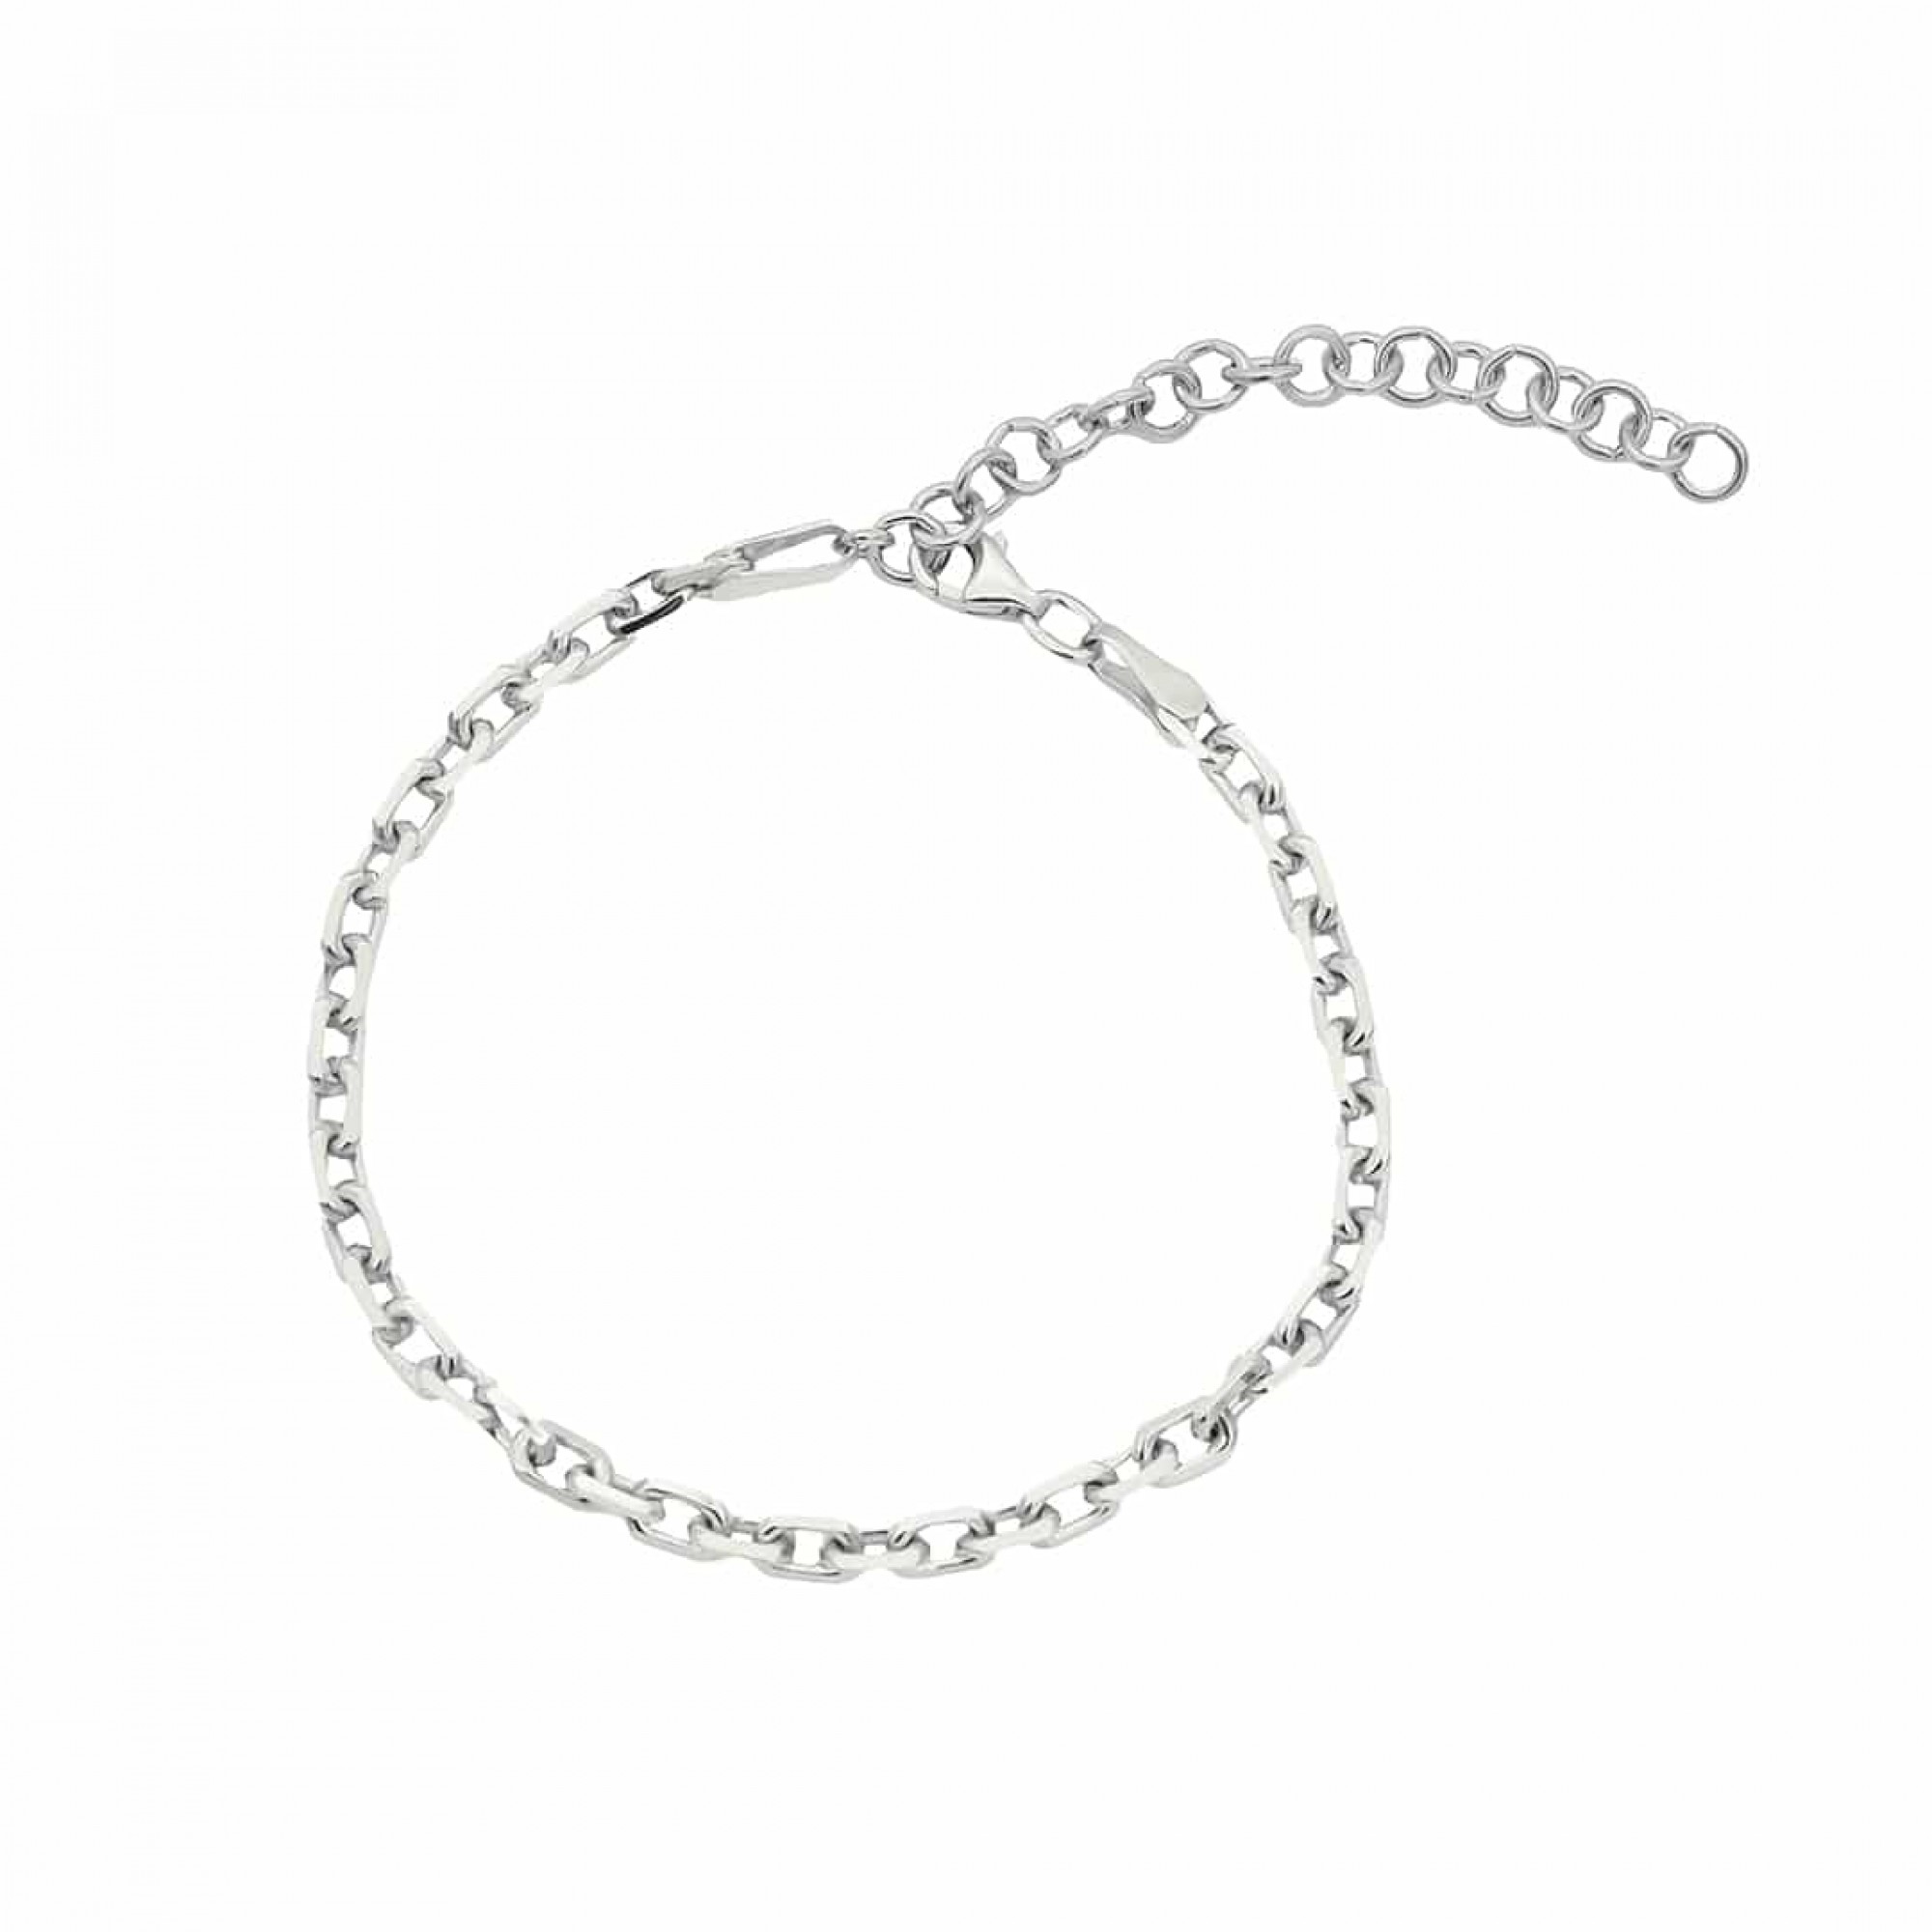 Silber Armkette/Armband 925 Armschmuck - Geschenk in als FashionJuwelier oder Silber Gold ideal